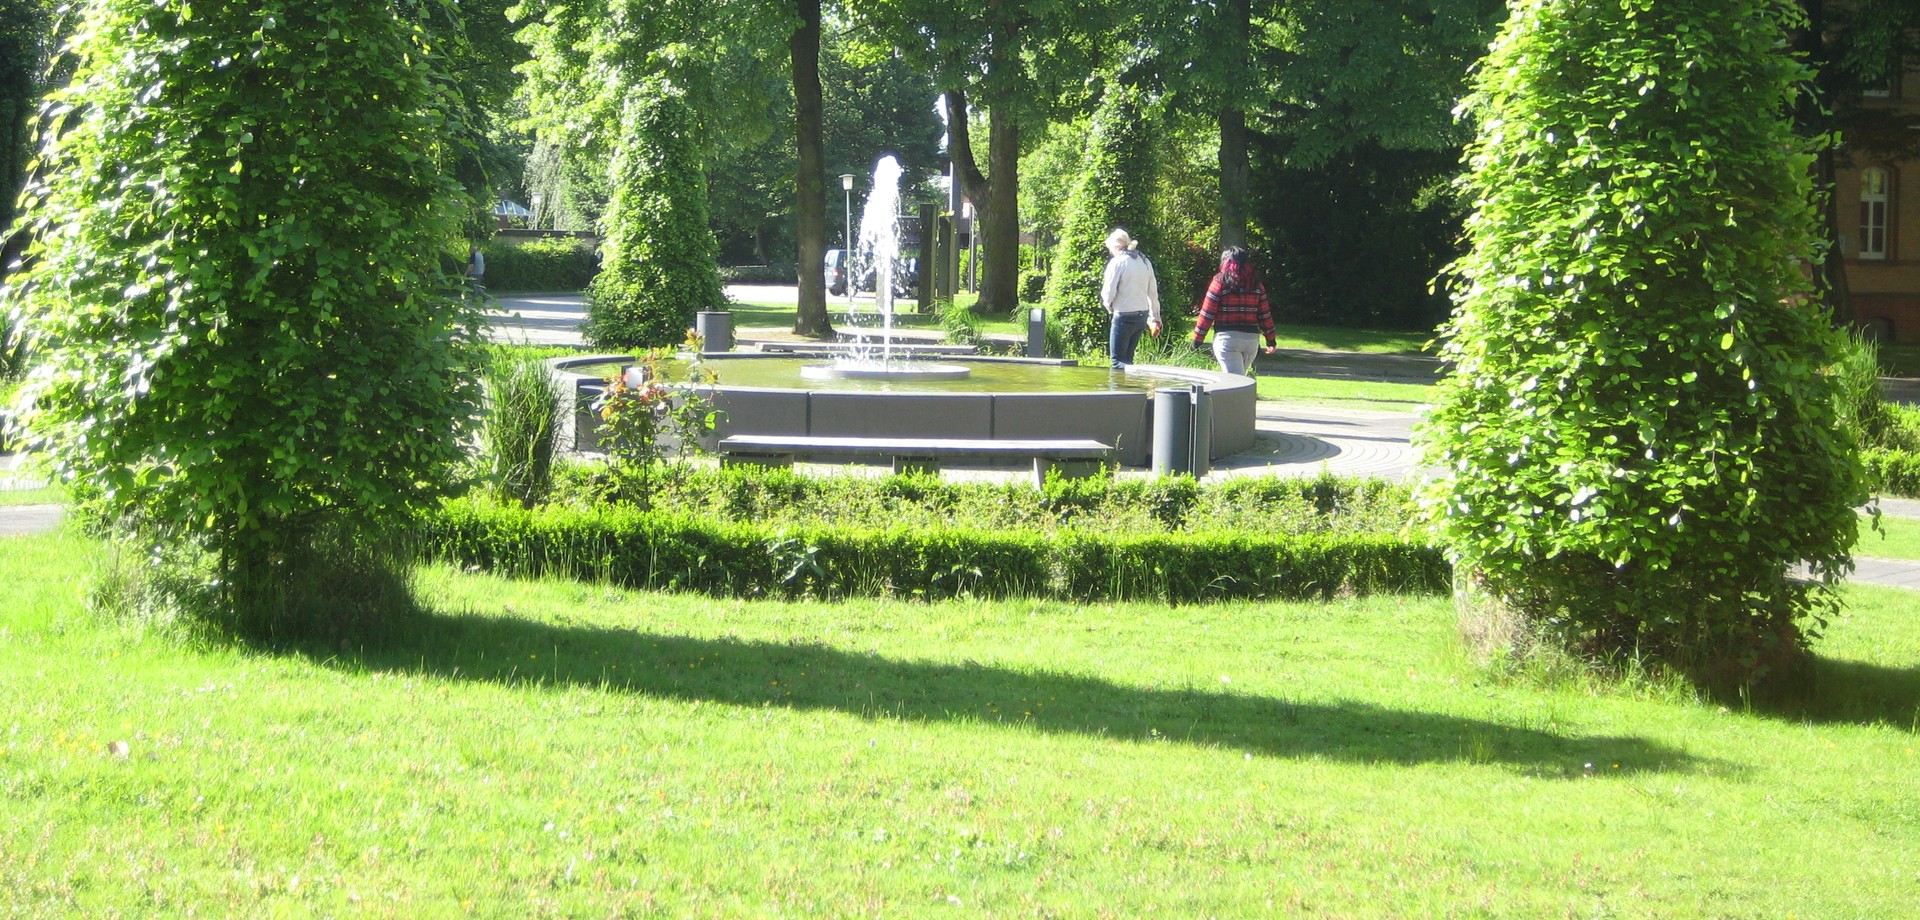 Zwei Frauen gehen an einem großen, sprudelnden Brunnen vorbei  Sie sind von hinten fotografiert. Der Brunnen ist von grünen Bäumen umgeben.